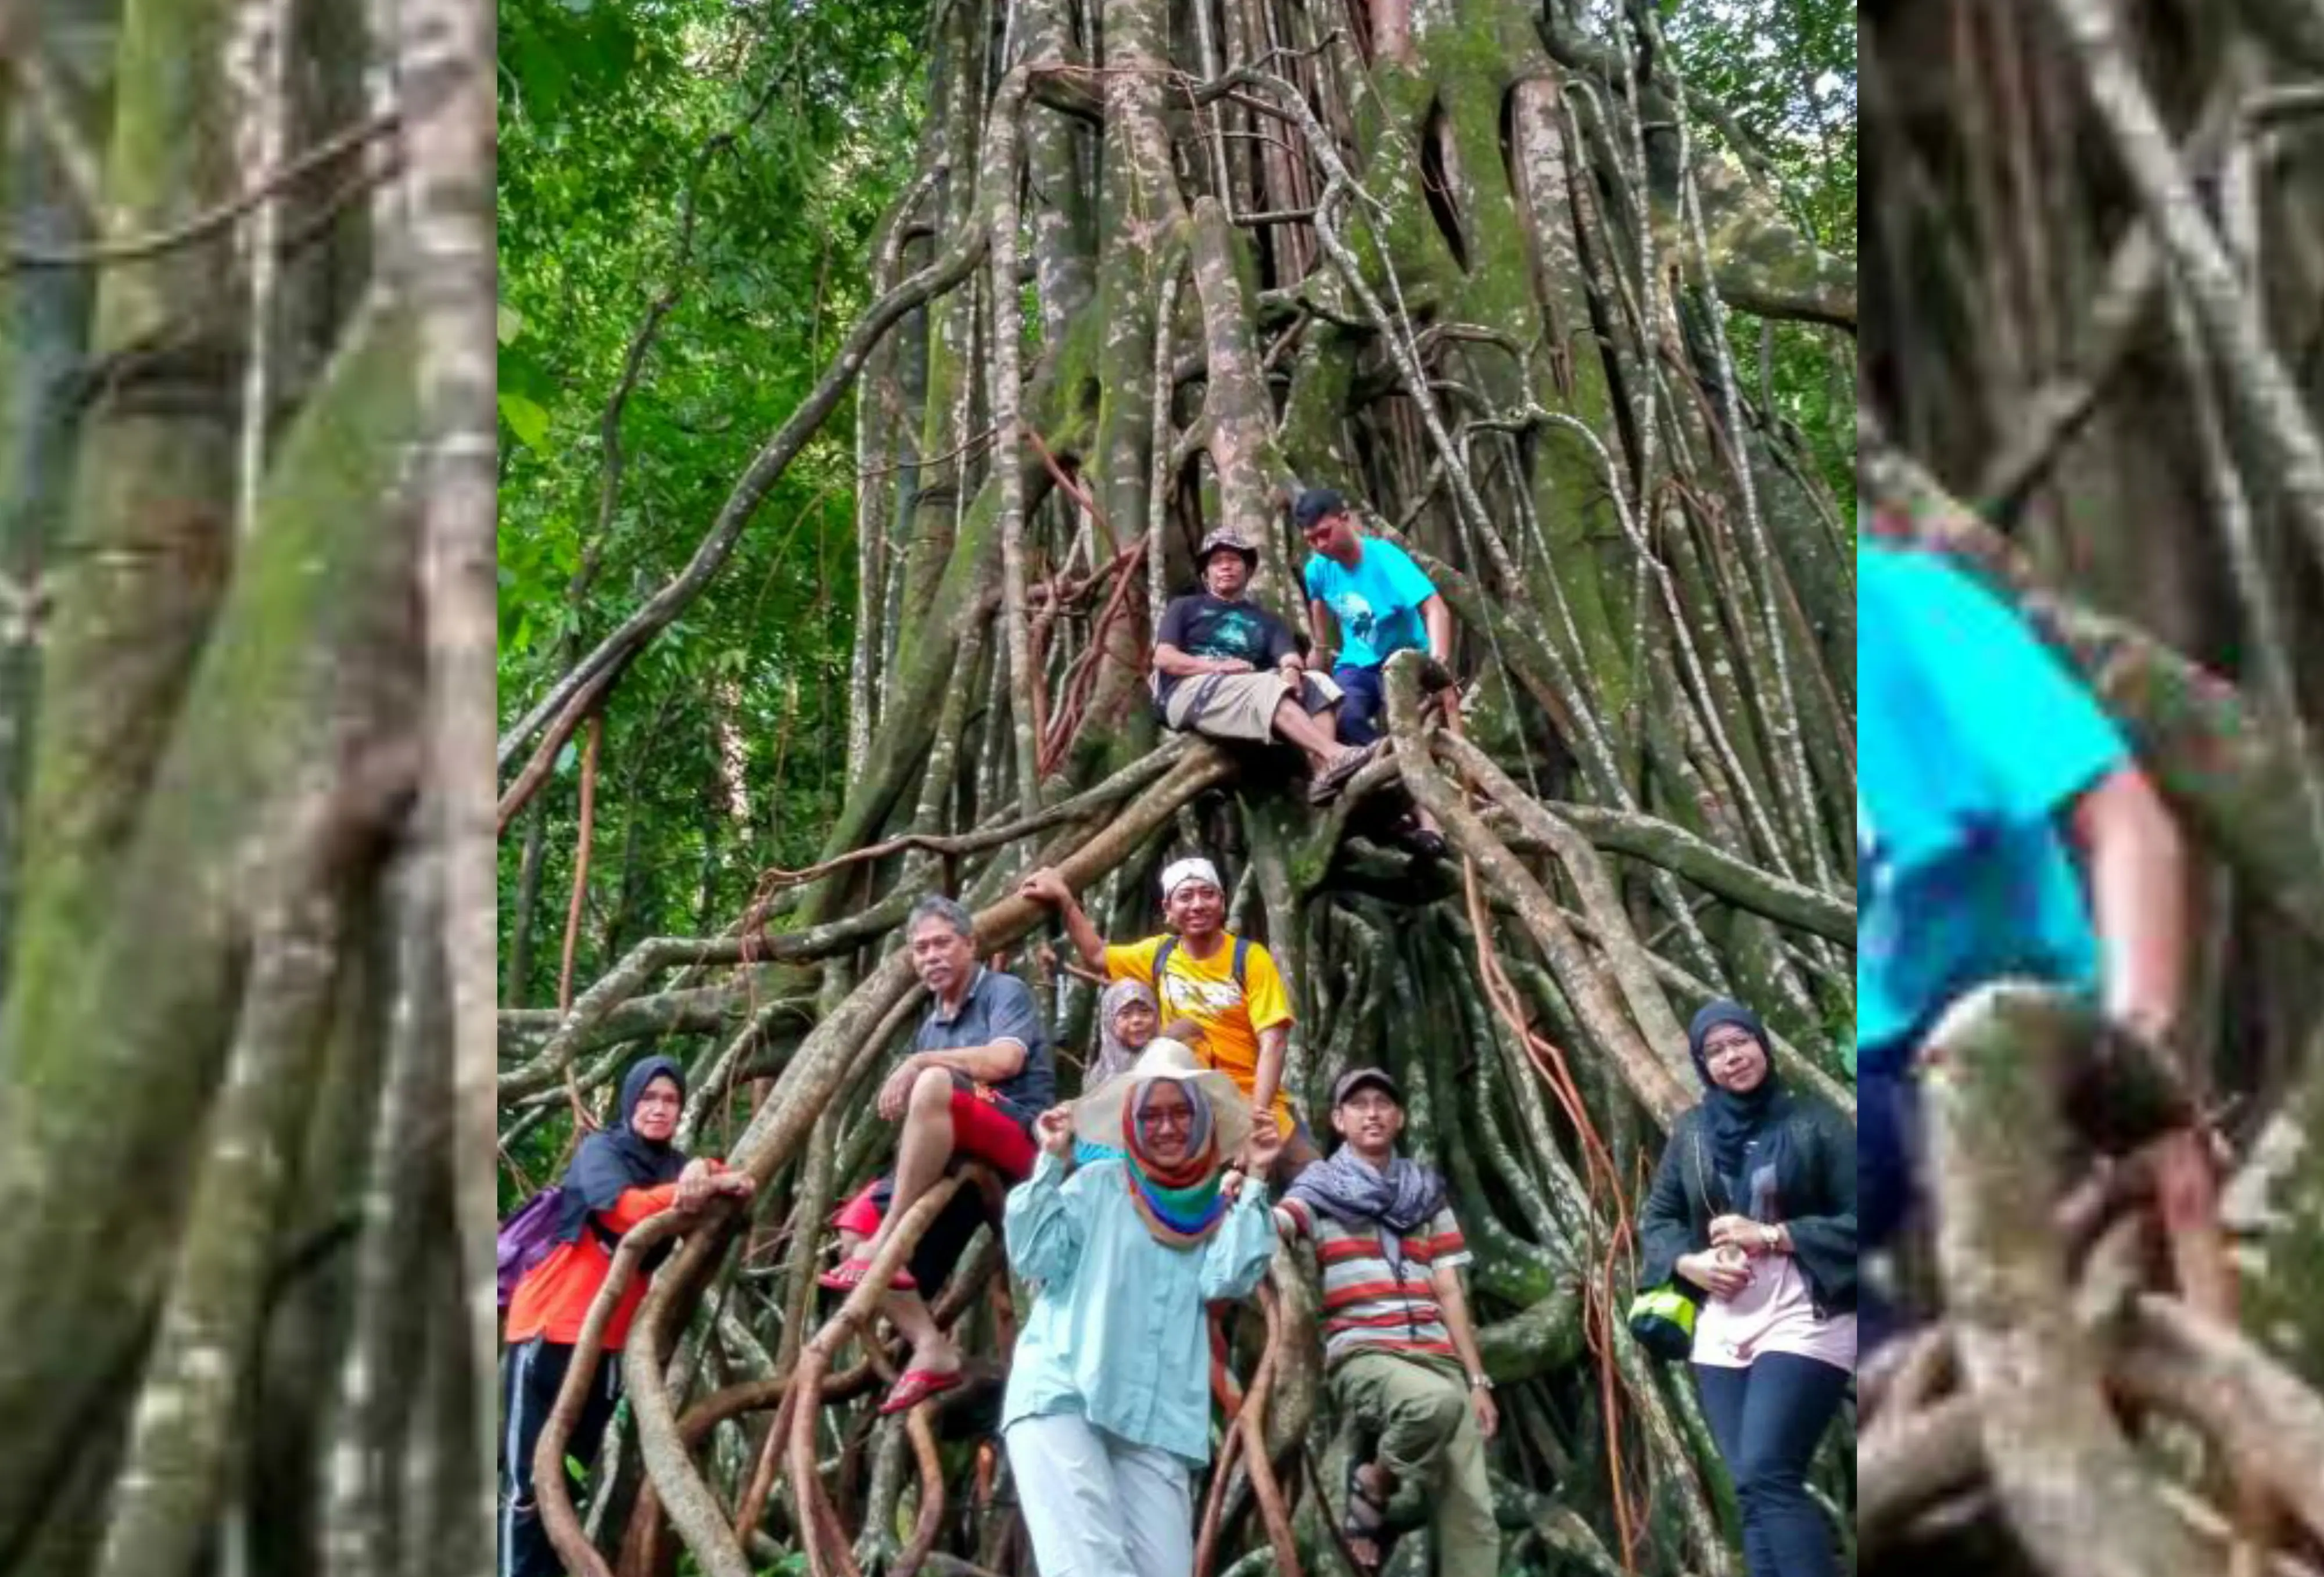 Pohon kiara raksasa berusia 100 tahun di kawasan Taman Nasional Ujung Kulon, Banten. (Liputan6.com/Yandhi Deslatama)